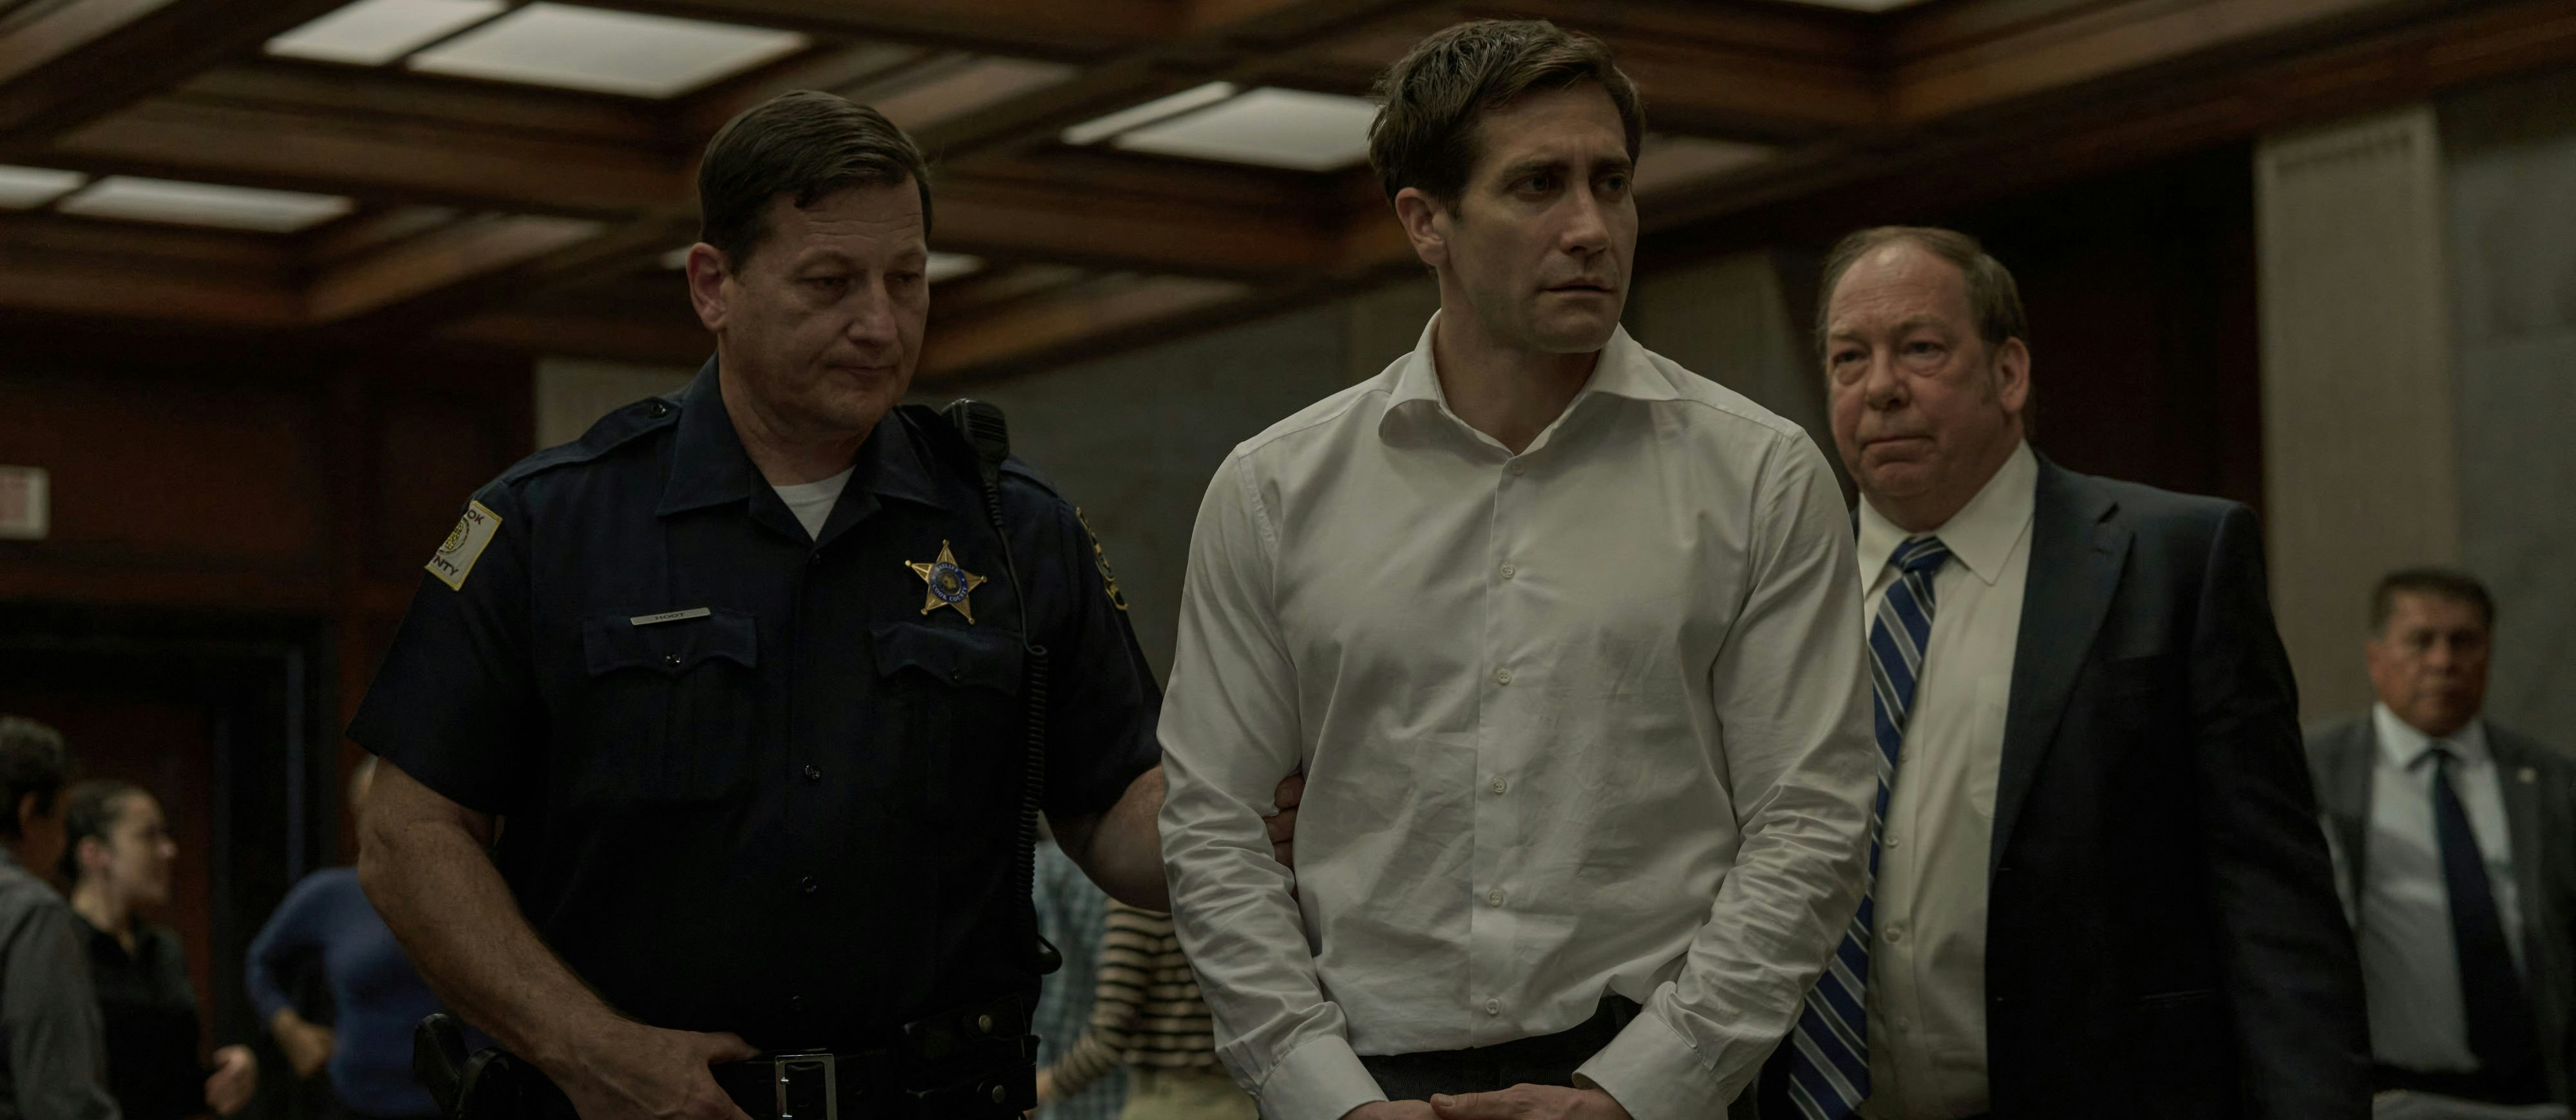 Gleich klicken die Handschellen: Staatsanwalt Rusty Sabich (Jake Gyllenhaal, Mitte) wird verdächtigt, seine Kollegin und Geliebte getötet zu haben. Sein Chef Raymond Horgan (Bill Camp, re.) kann nur tatenlos zusehen. Die Serien-Verfilmung des Thrillers "Aus Mangel an Beweisen" von Scott Turow startet am 12. Juni auf Apple TV+